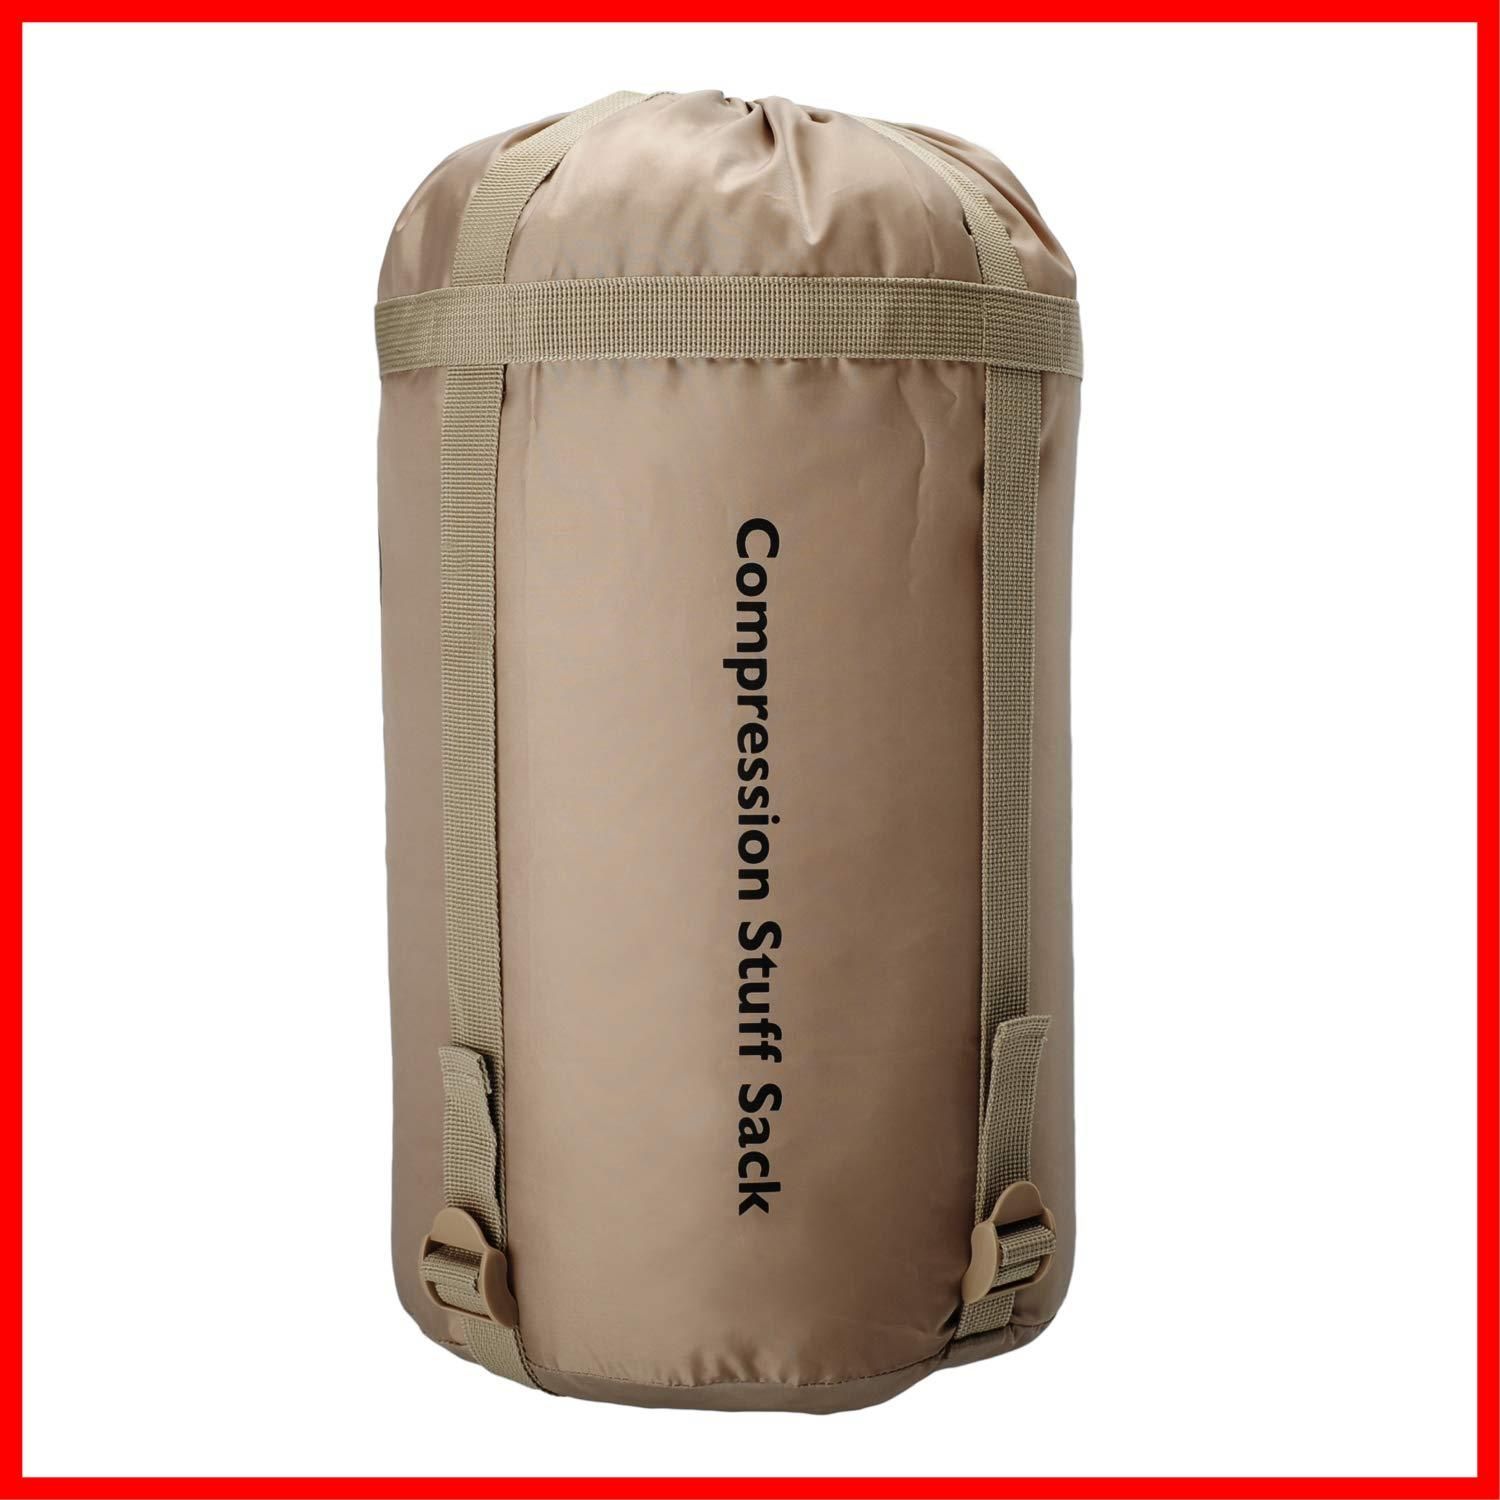 【人気商品】Snugpak(スナグパック) 寝袋 シュラフ コンプレッションサック 各サイズ 各色 収納袋 衣類 圧縮袋 旅行 キャンプ (日本正規品)